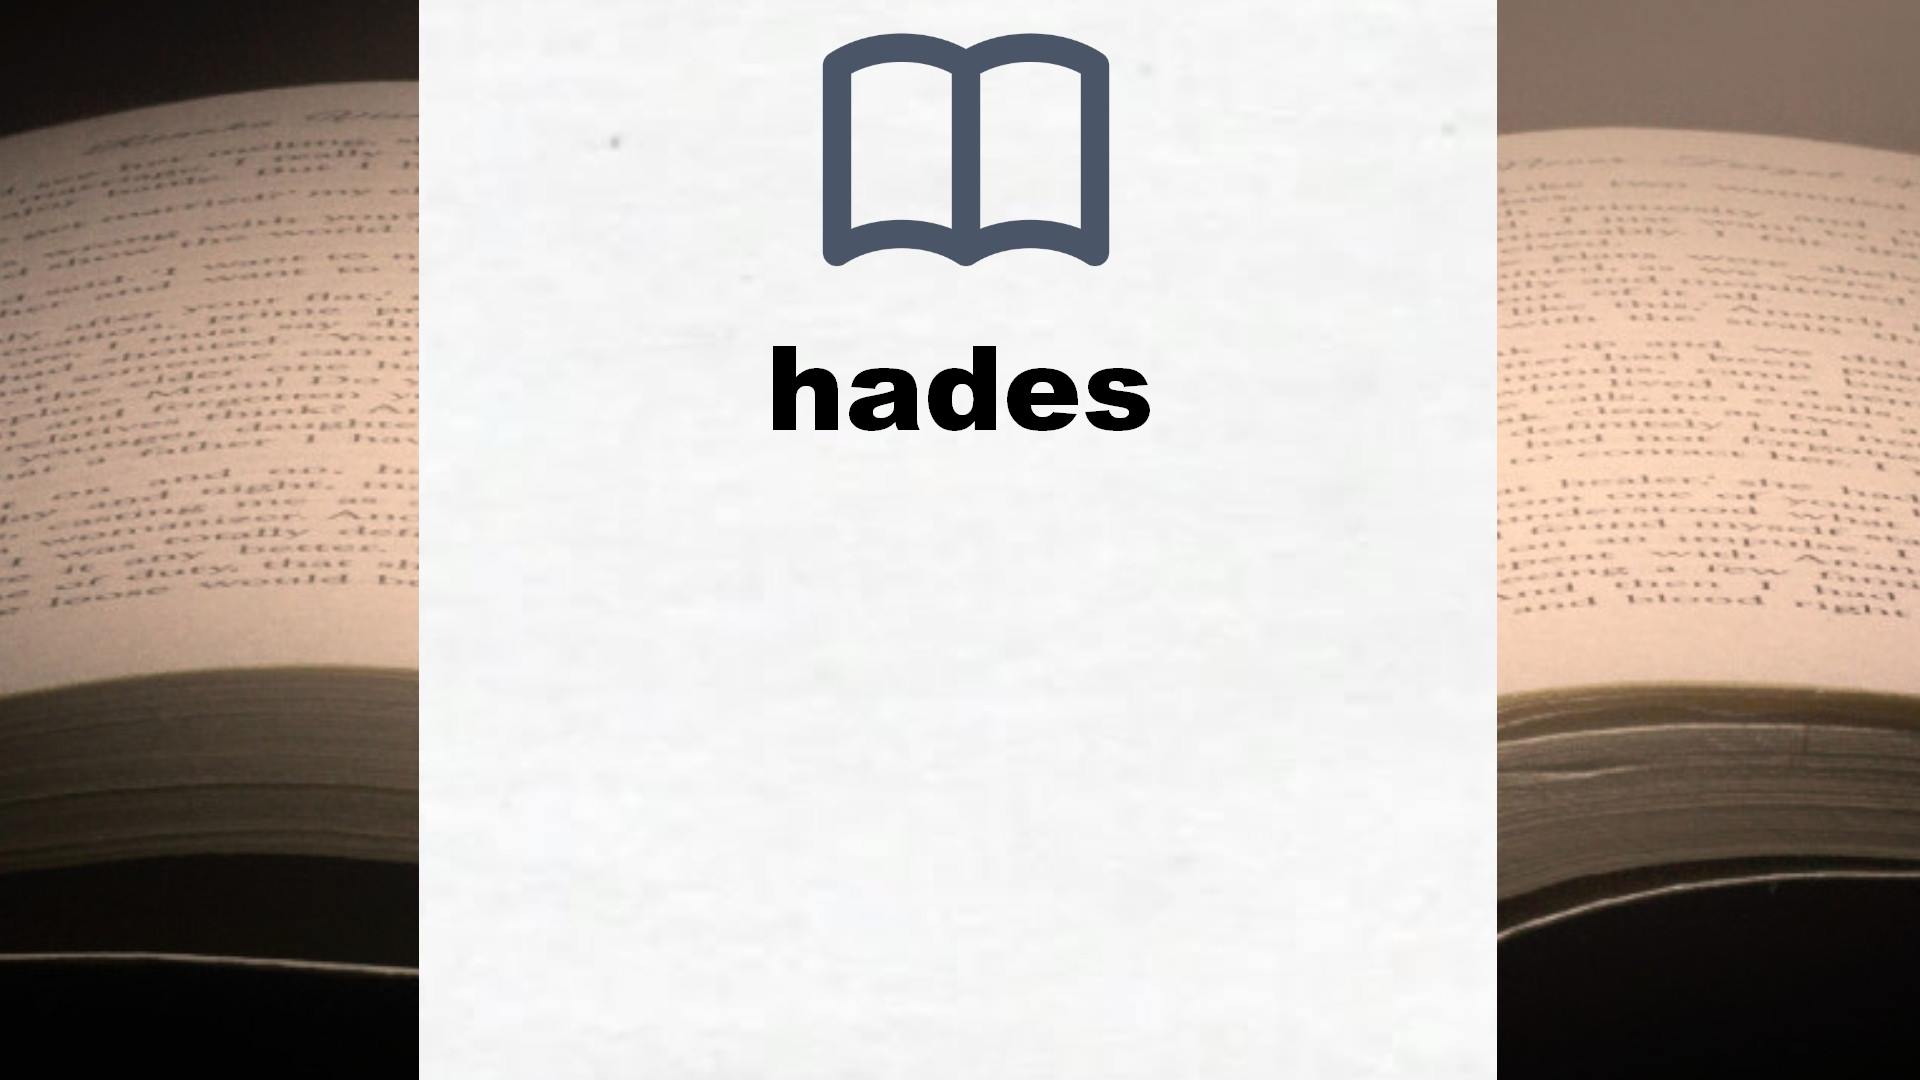 Libros sobre hades